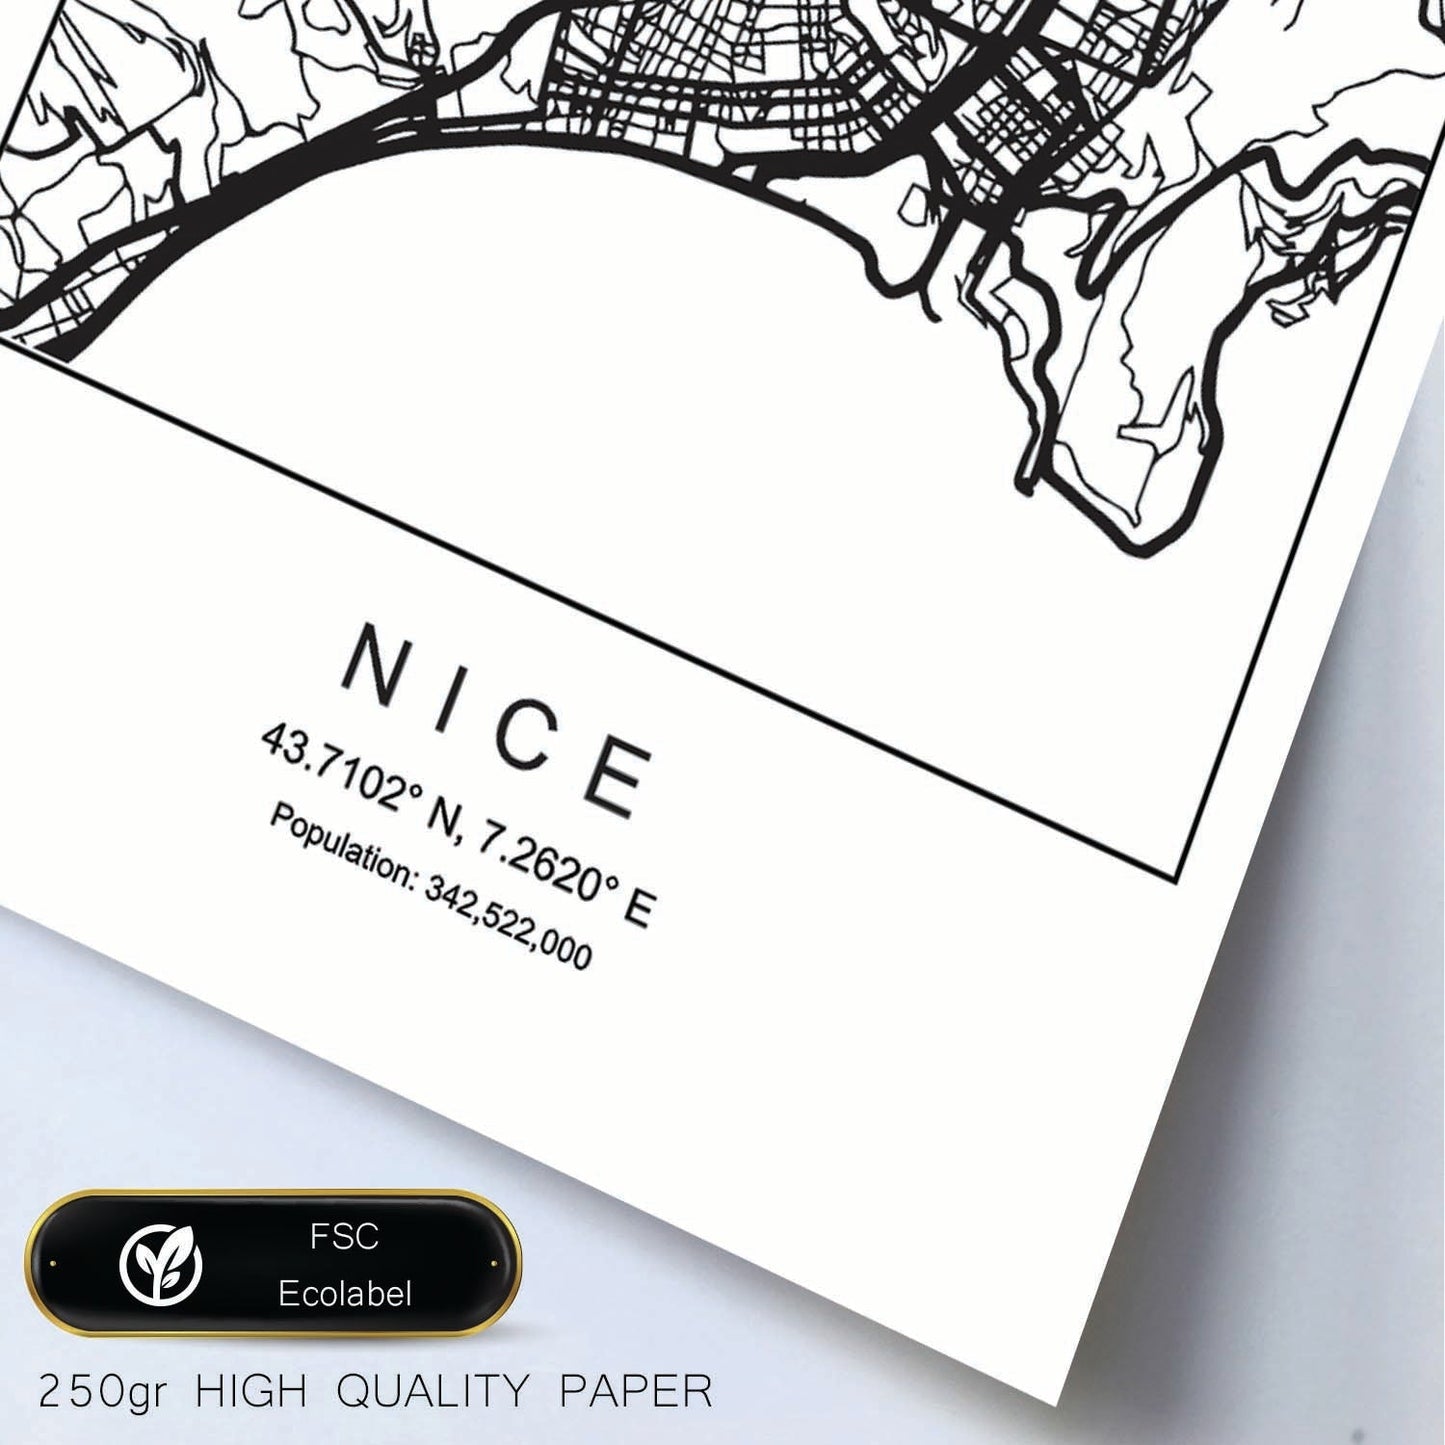 Lámina mapa de la ciudad Nice estilo nordico en blanco y negro.-Artwork-Nacnic-Nacnic Estudio SL